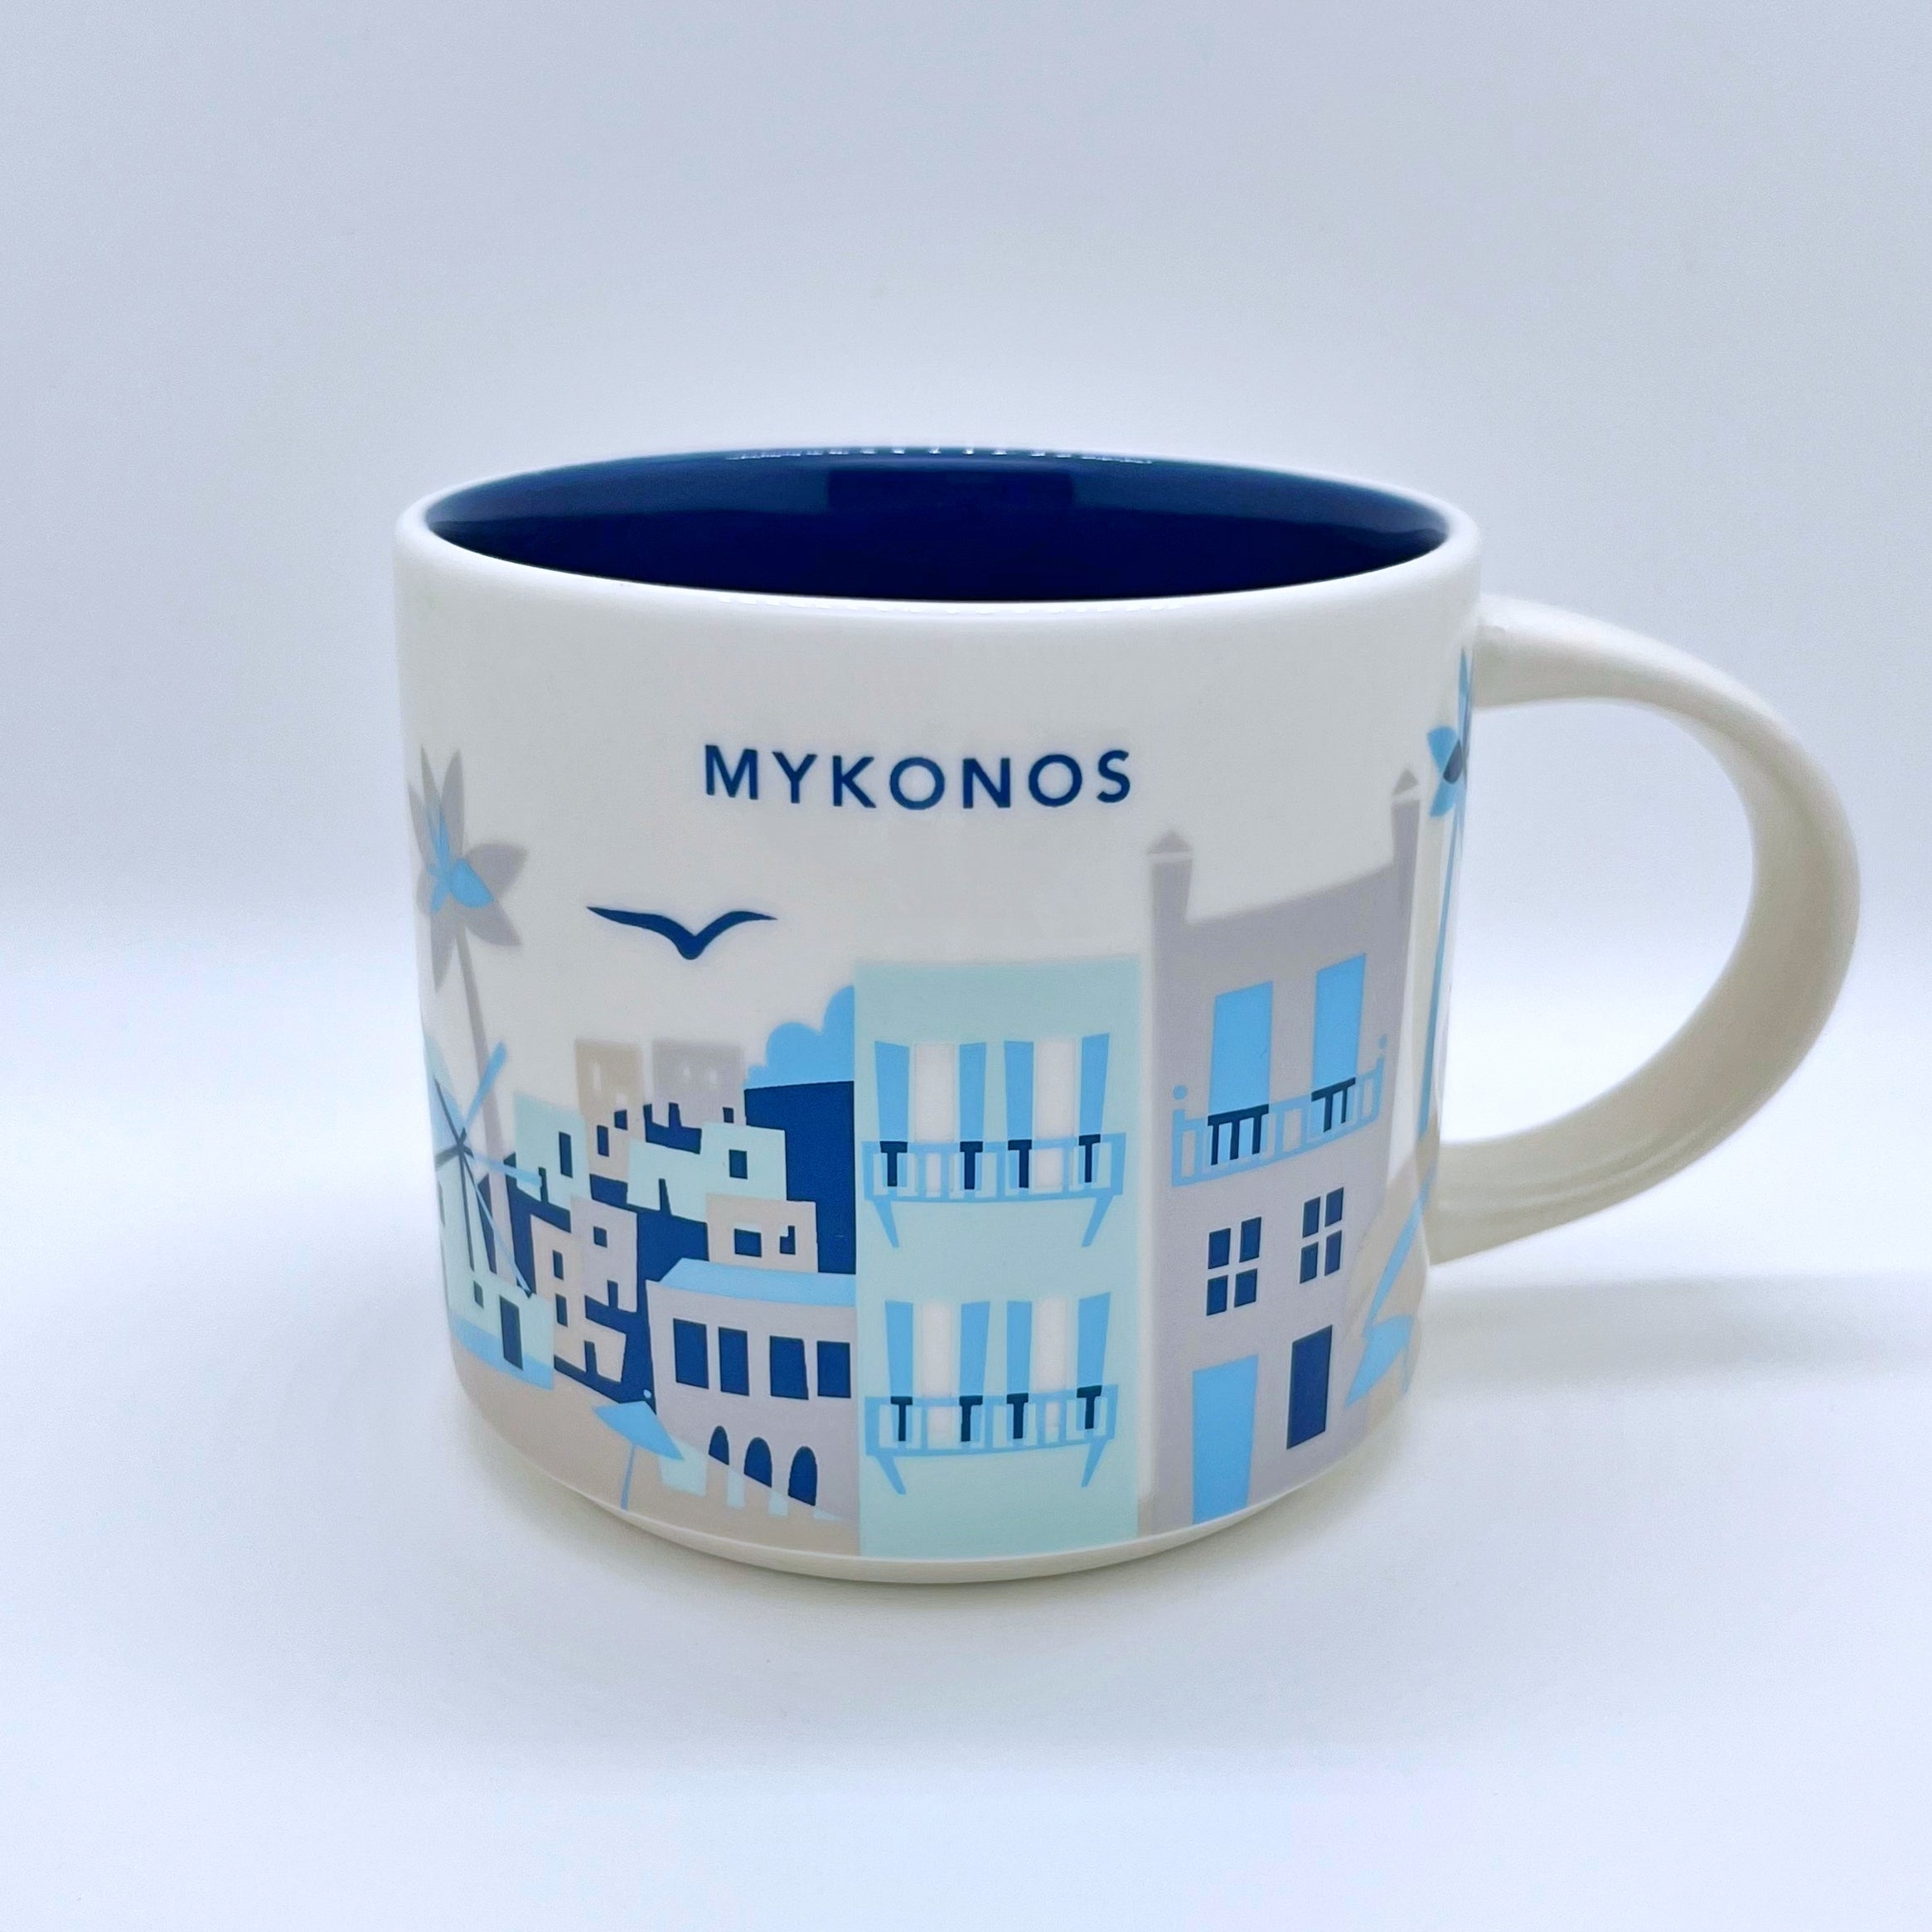 Kaffee Tee und Cappuccino Tasse von Starbucks mit gemalten Bildern aus der Stadt Mykonos